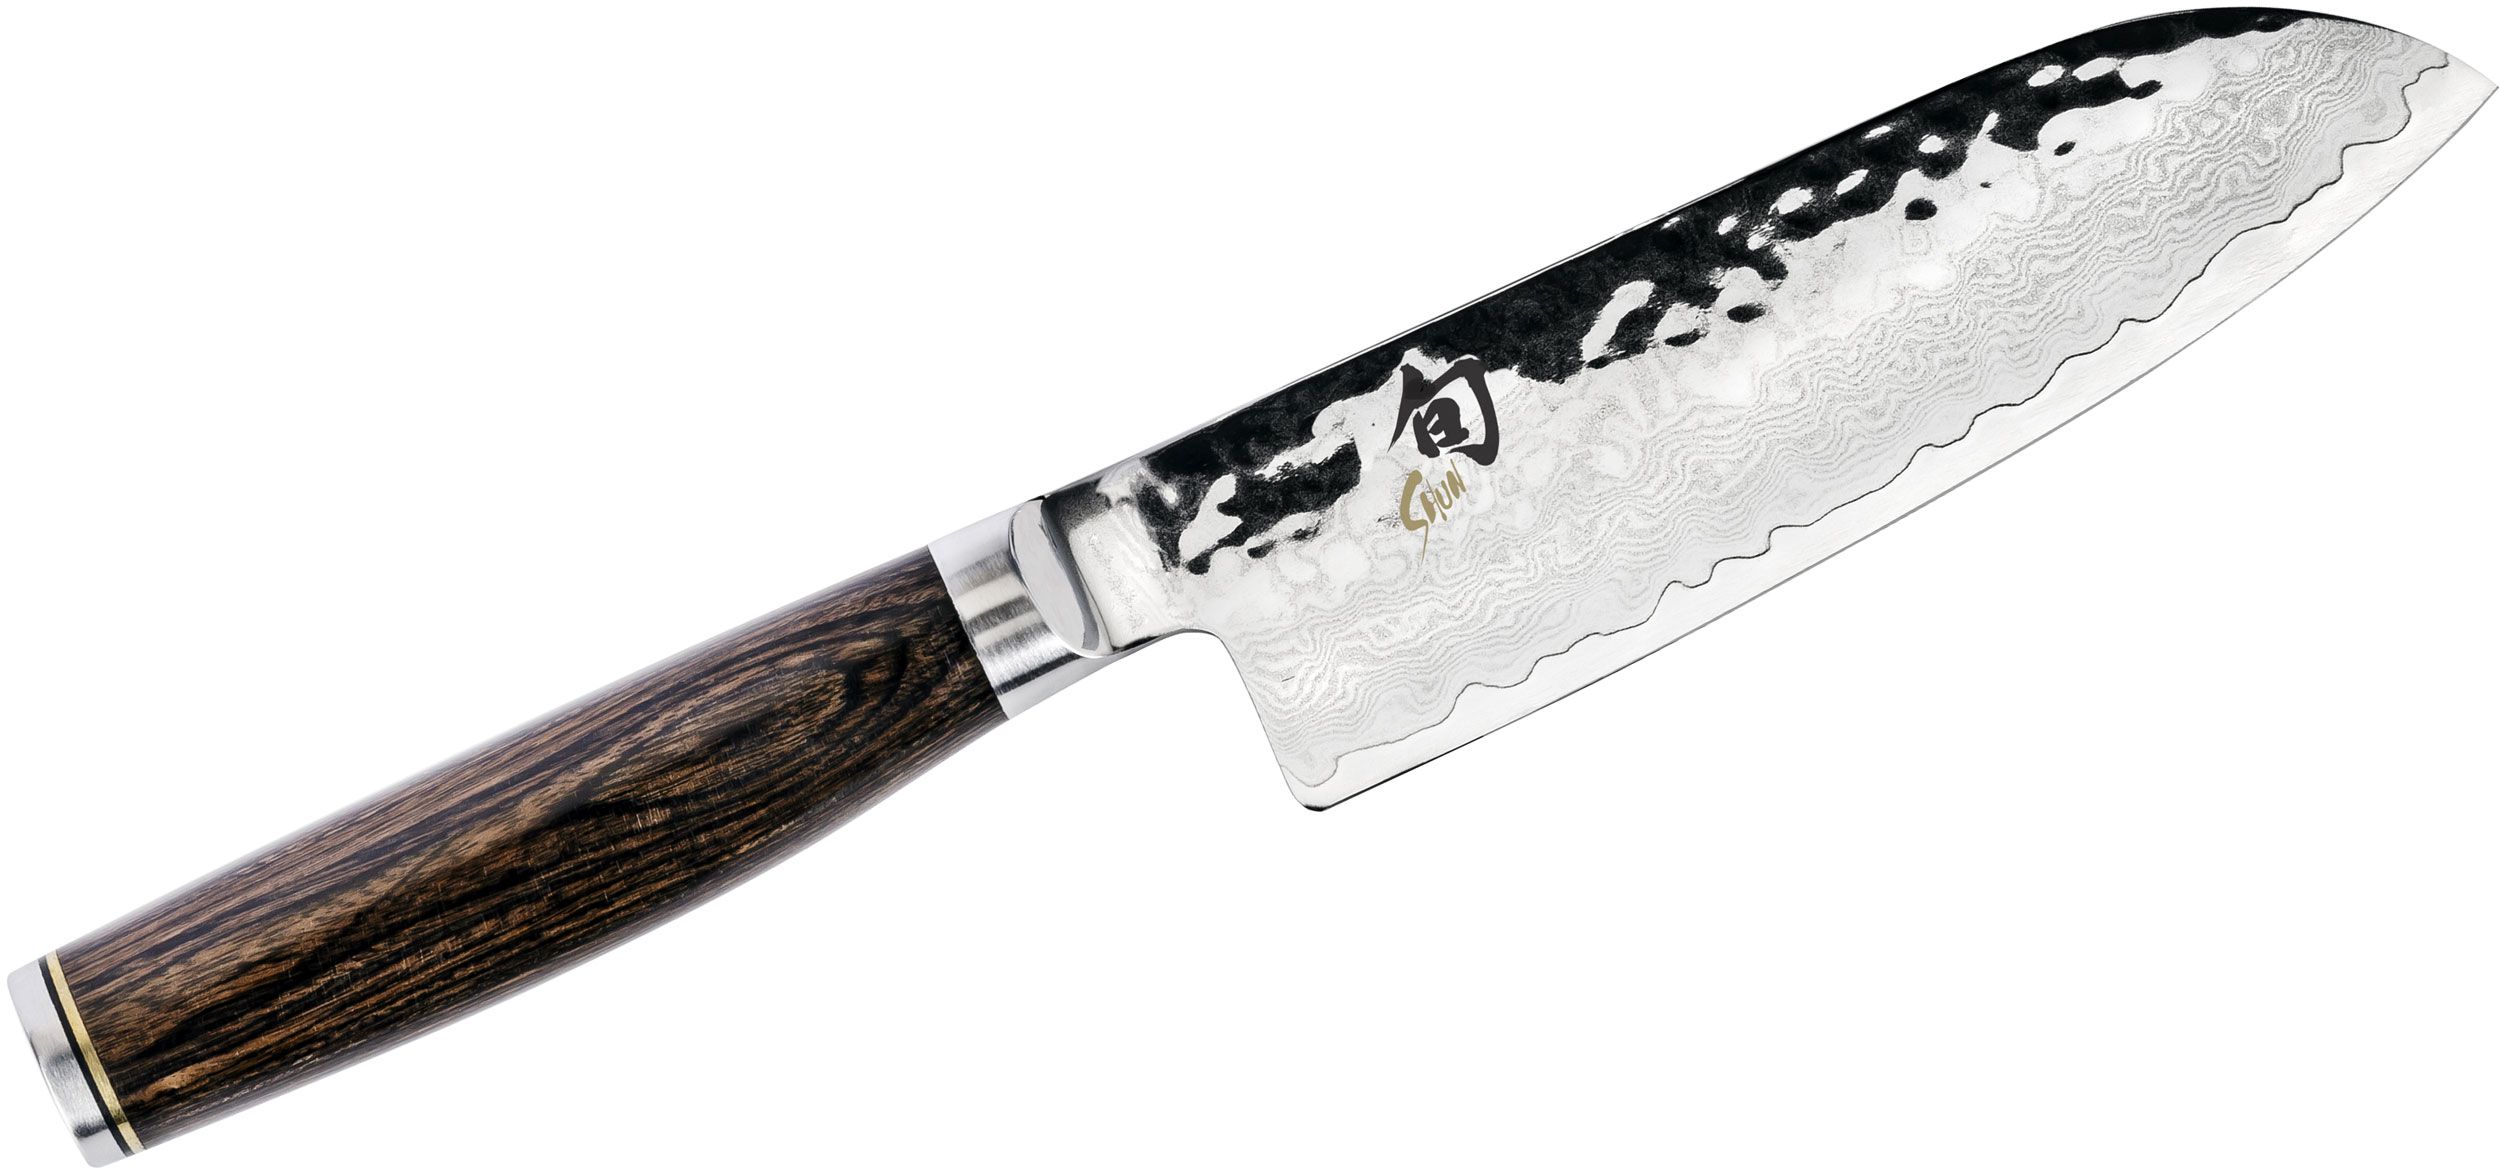 SHUN 5 INCH SANTOKU KNIFE